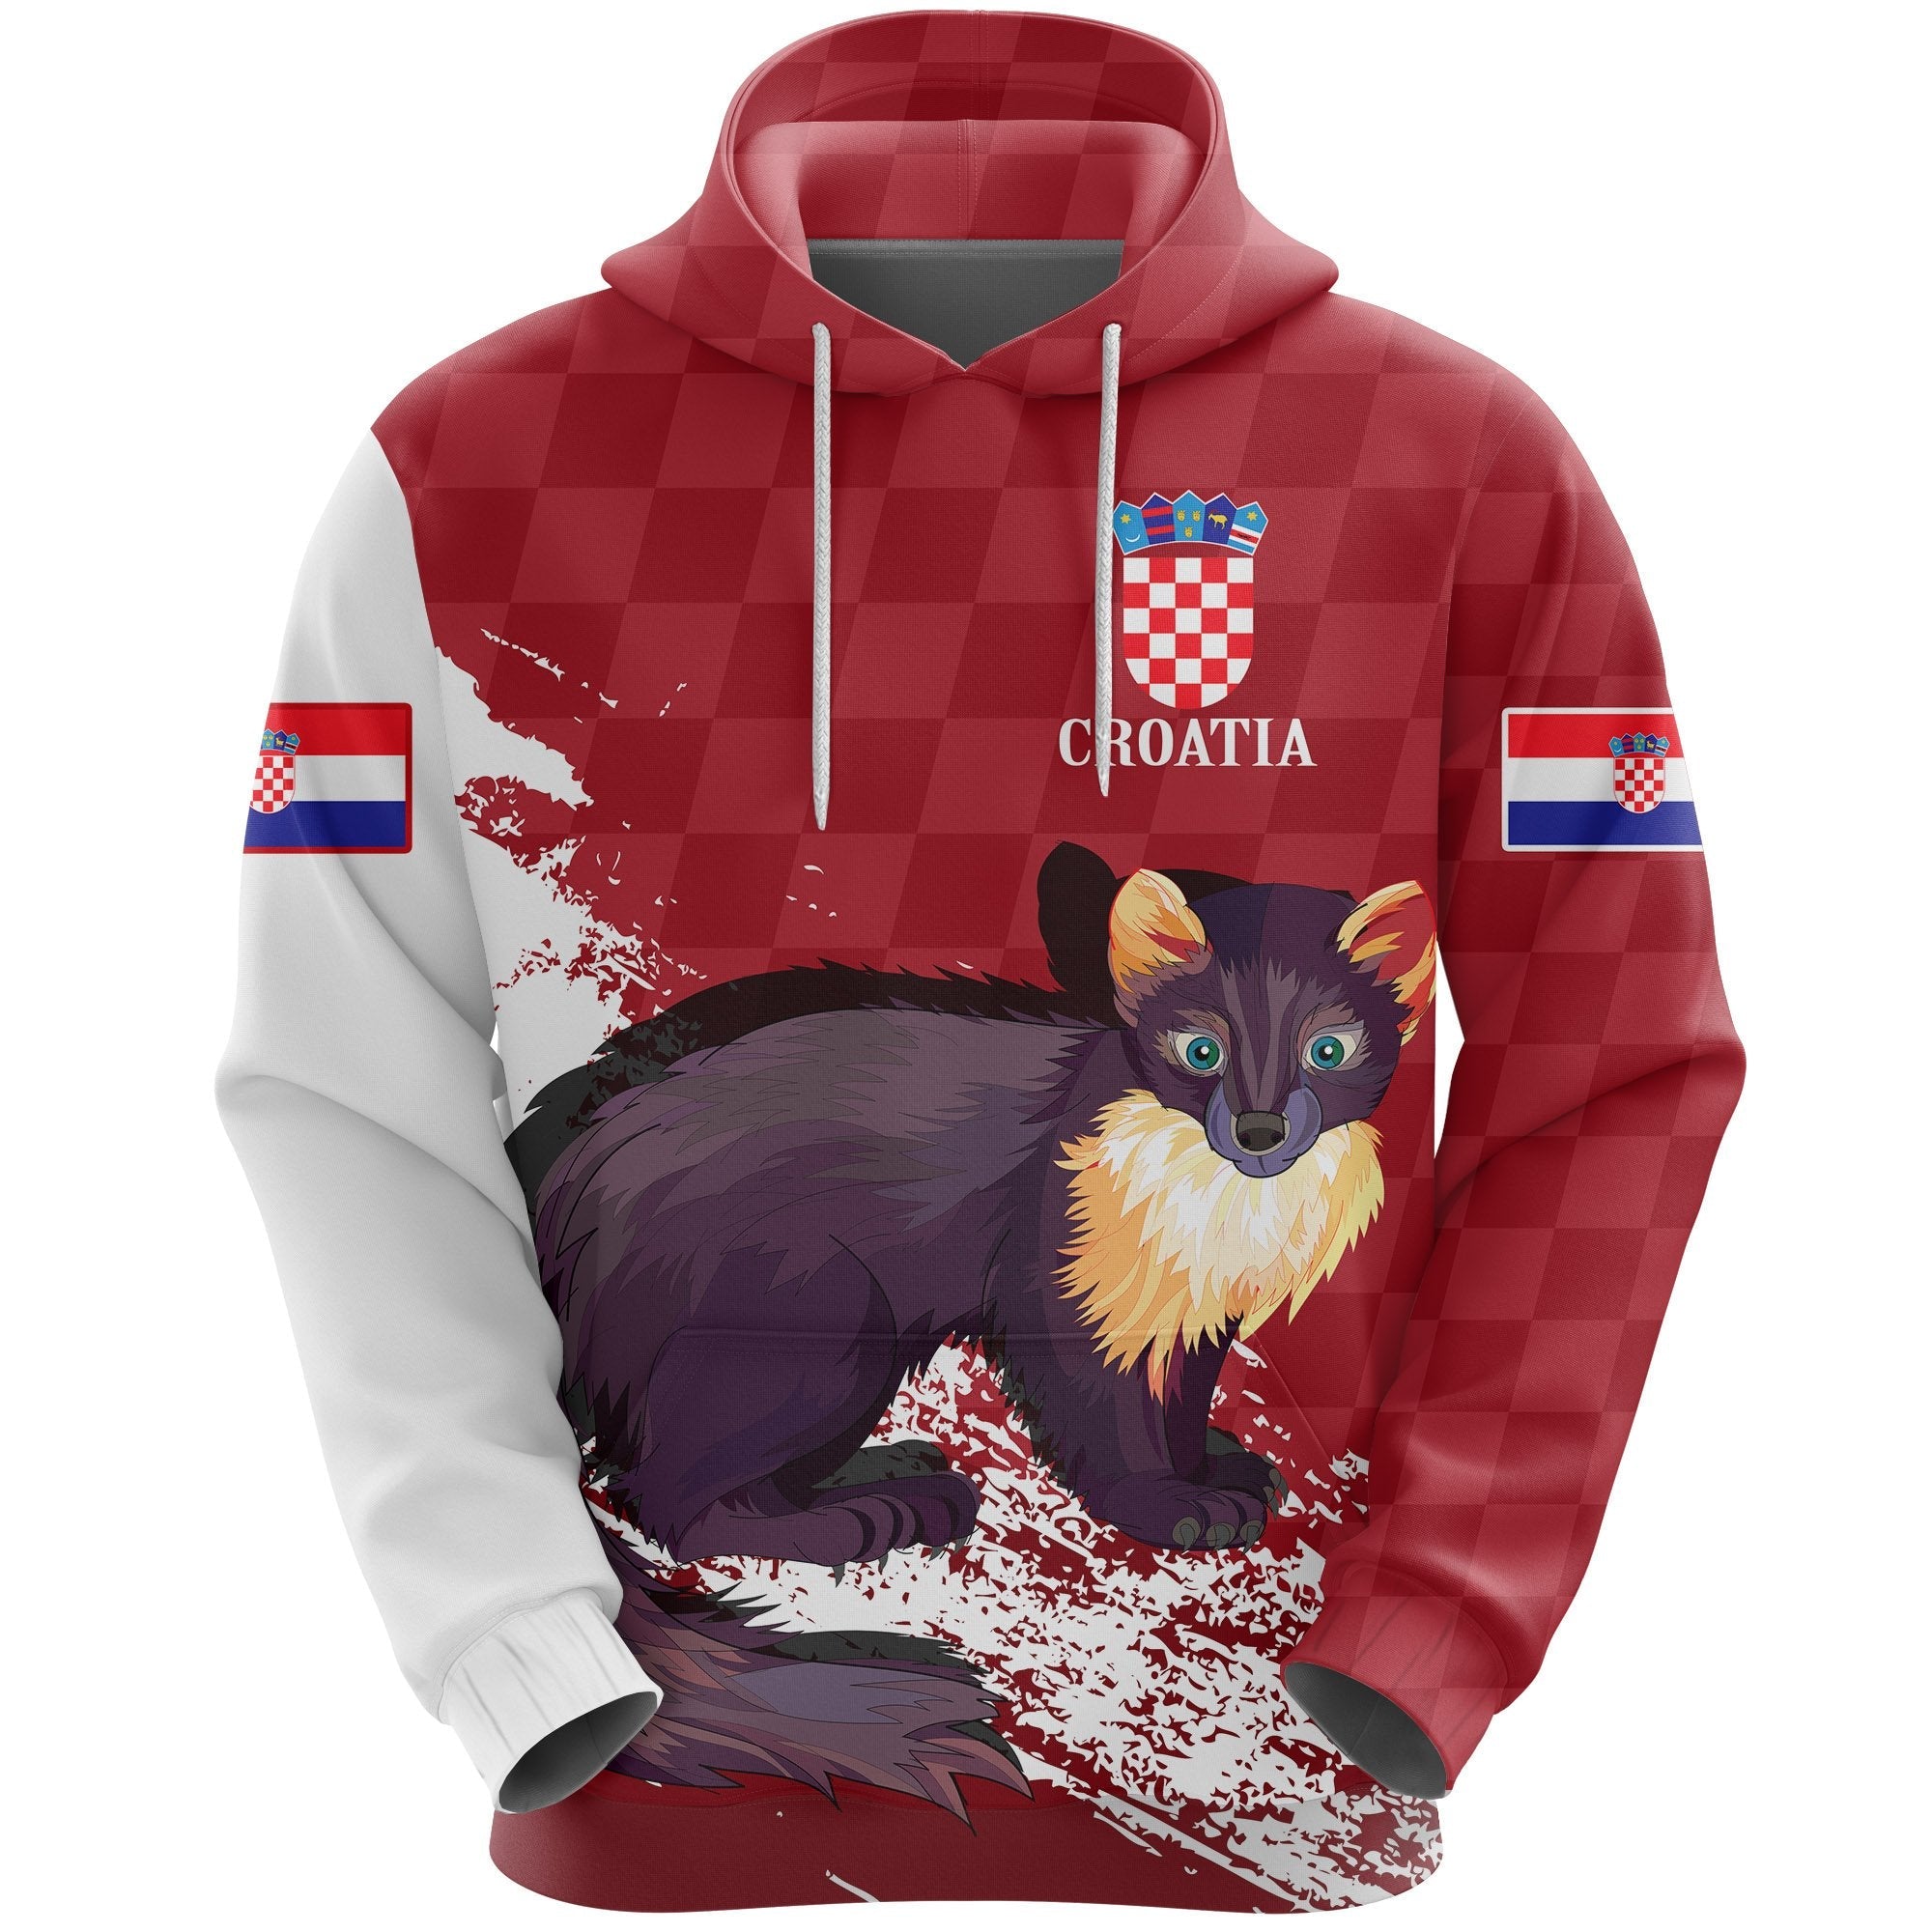 hrvatska-croatia-hoodie-marten